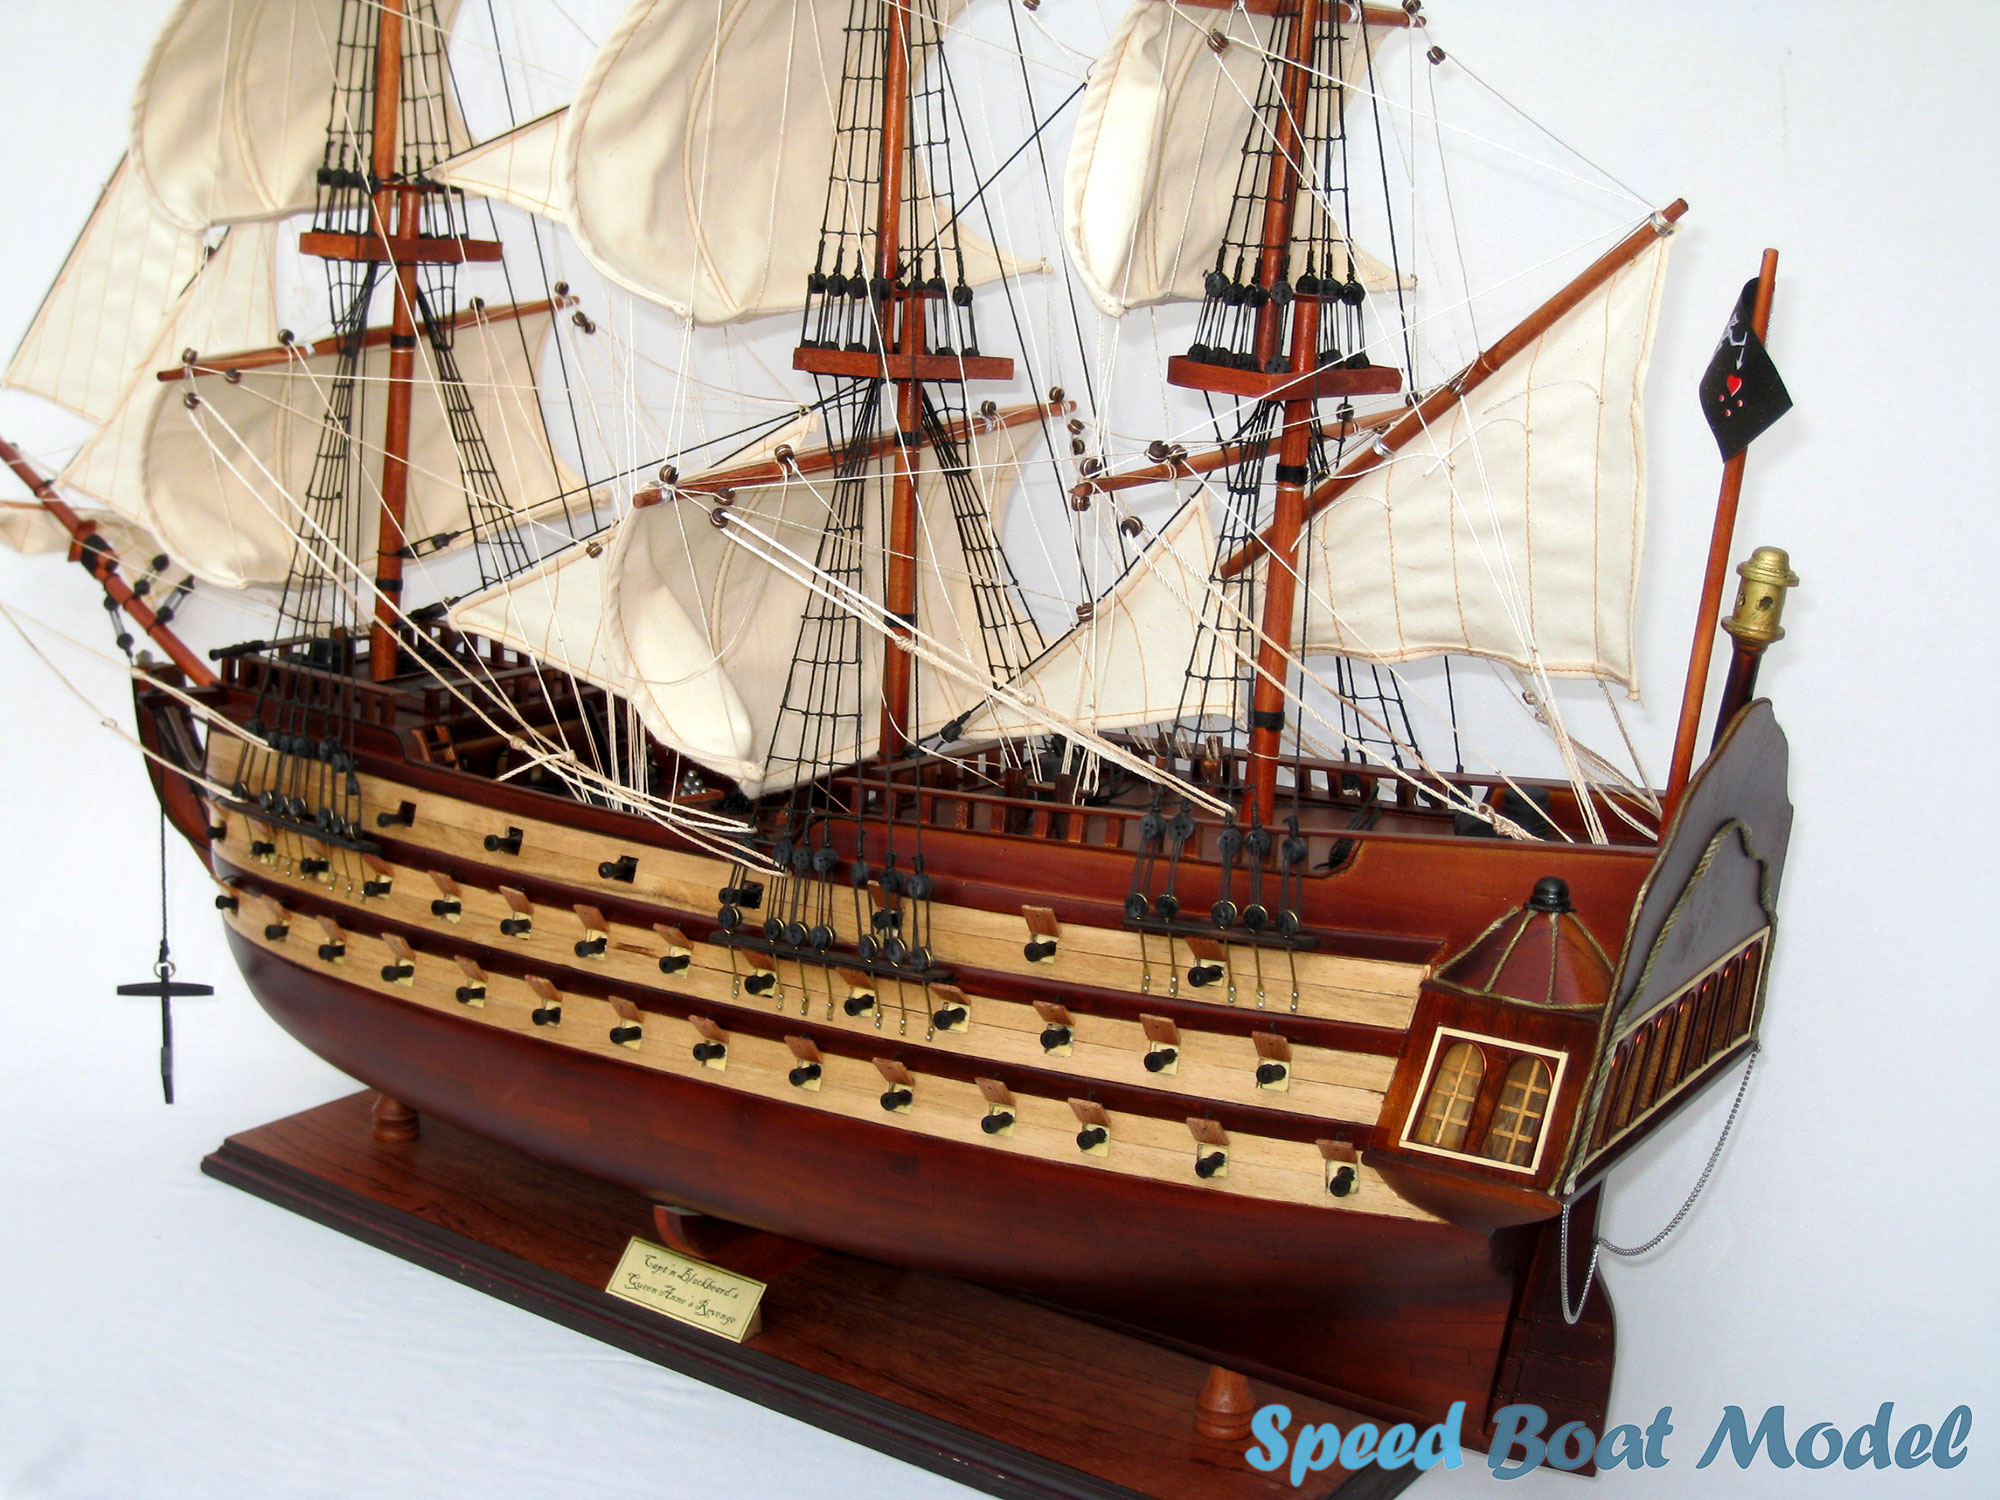 Queen Anne's Revenge Tall Ship Model 31.4"